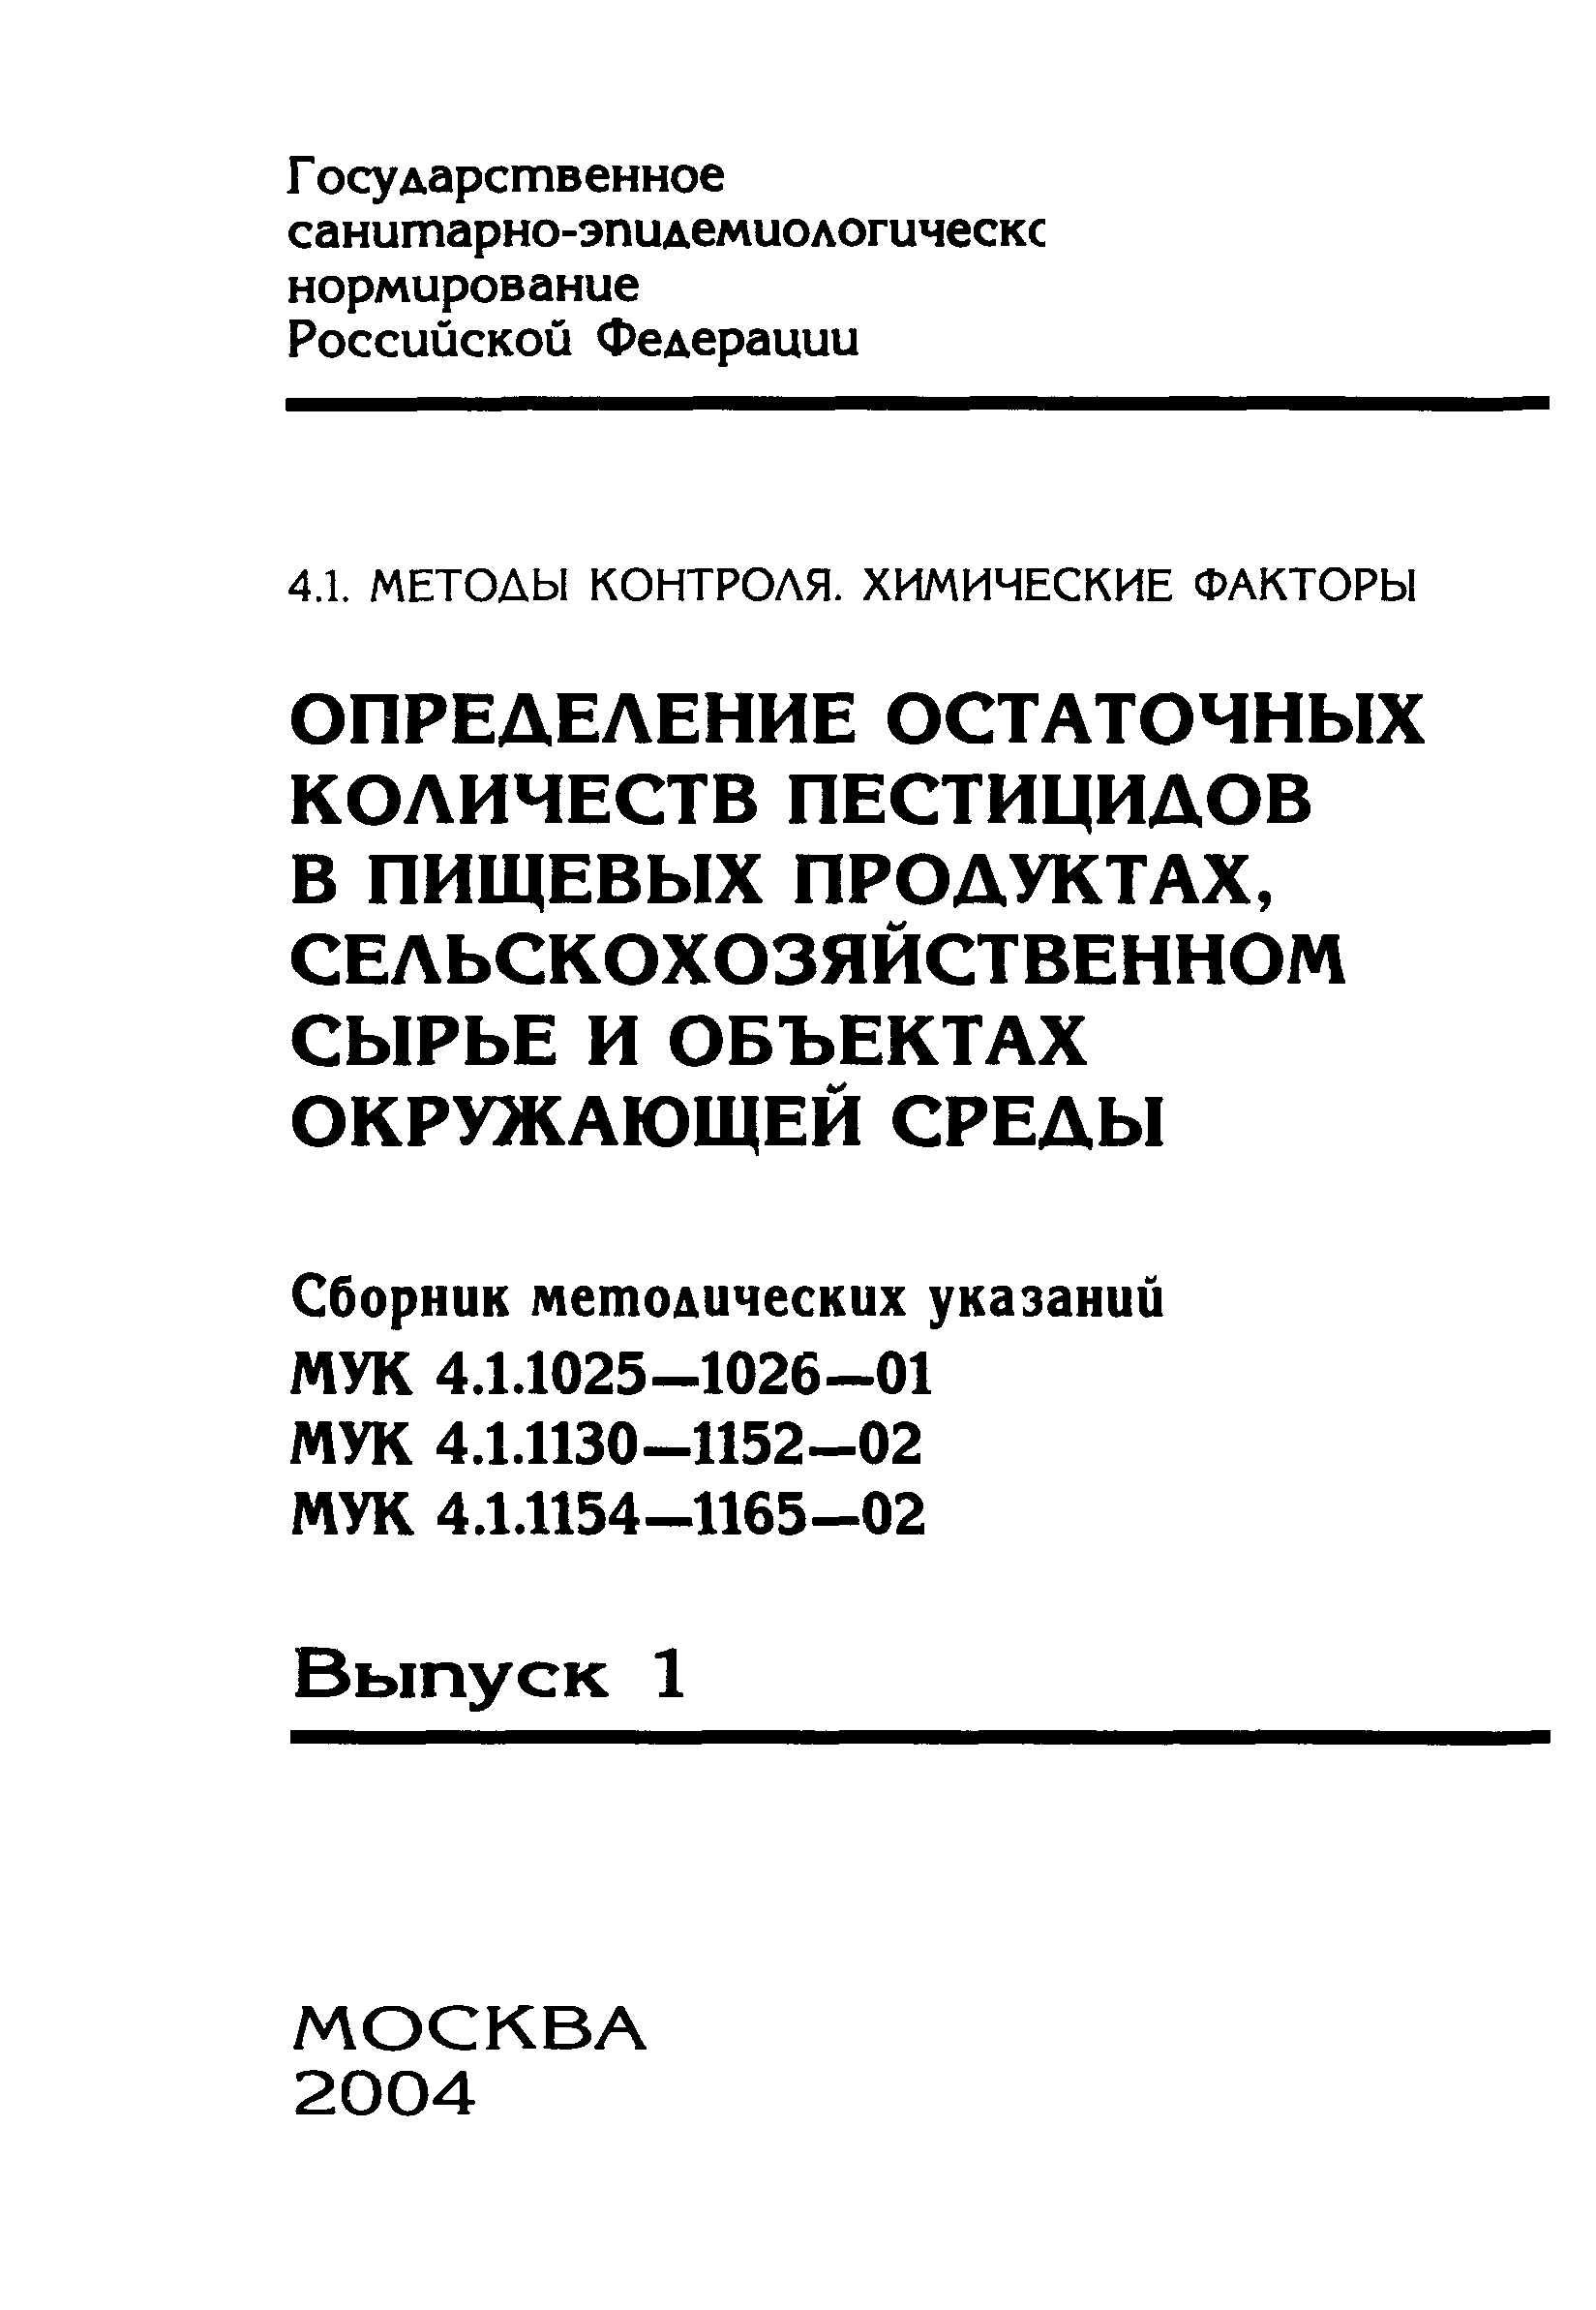 МУК 4.1.1136-02